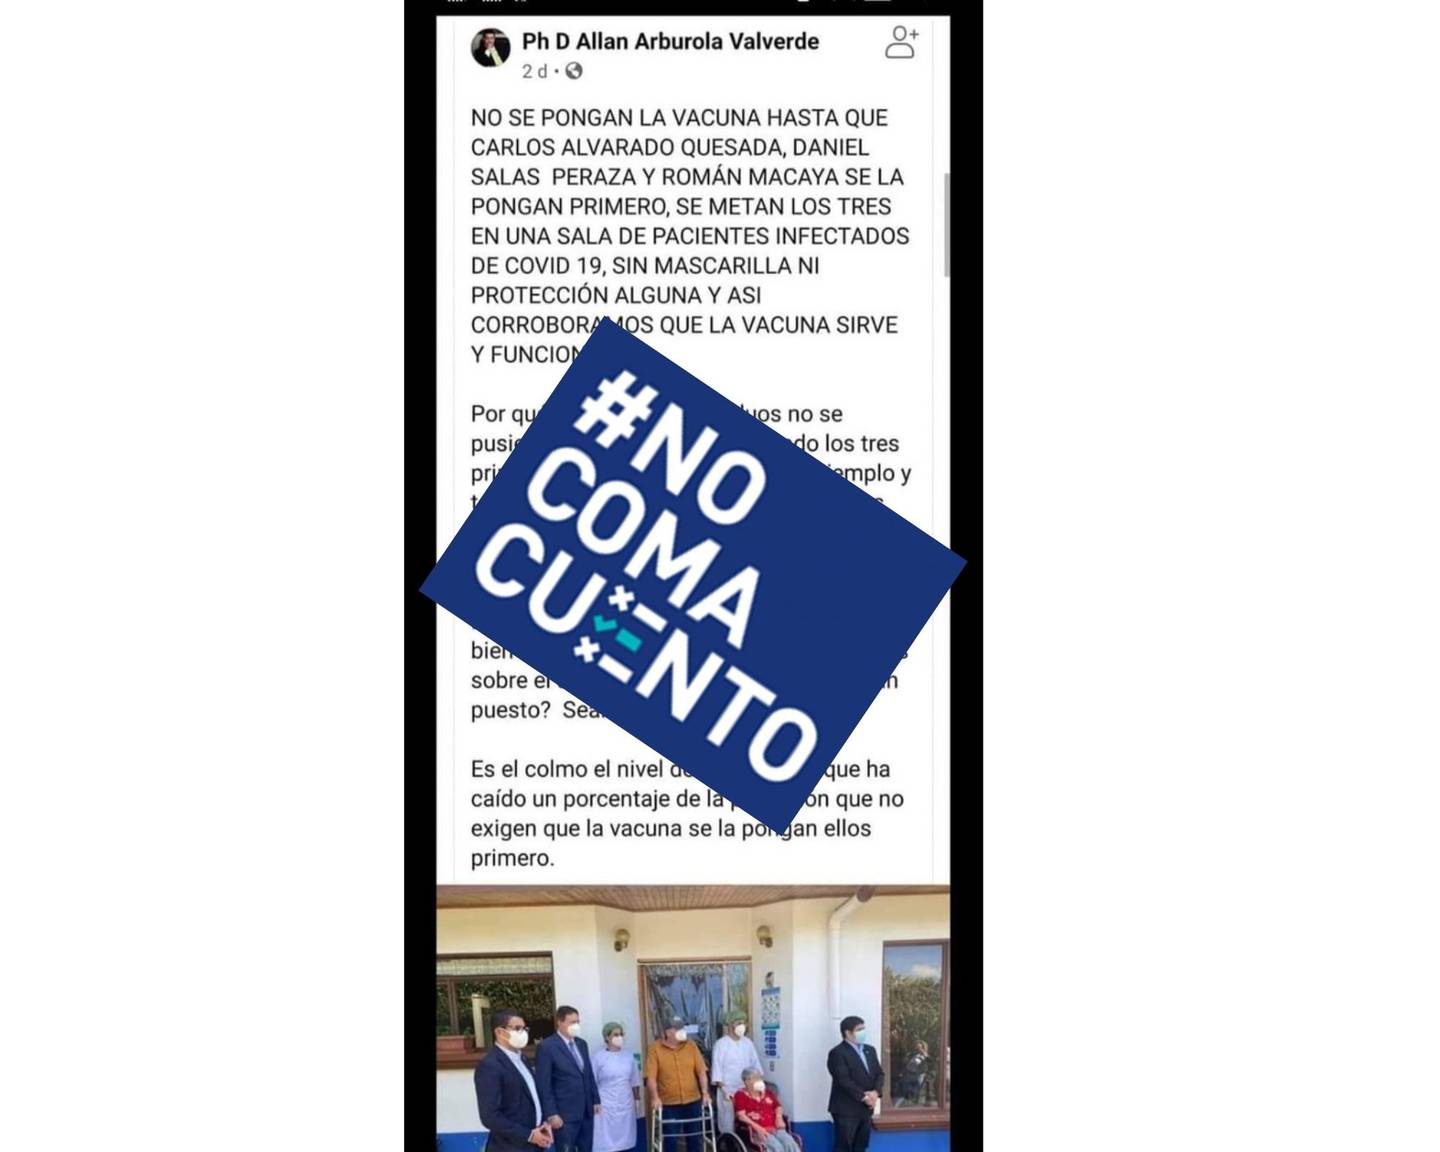 Una publicación de Facebook asegura que el presidente de la República, Carlos Alvarado; el ministro de Salud, Daniel Salas, y el presidente ejecutivo de la CCSS, Román Macaya, no se vacunarán porque no creen en la inmunización.